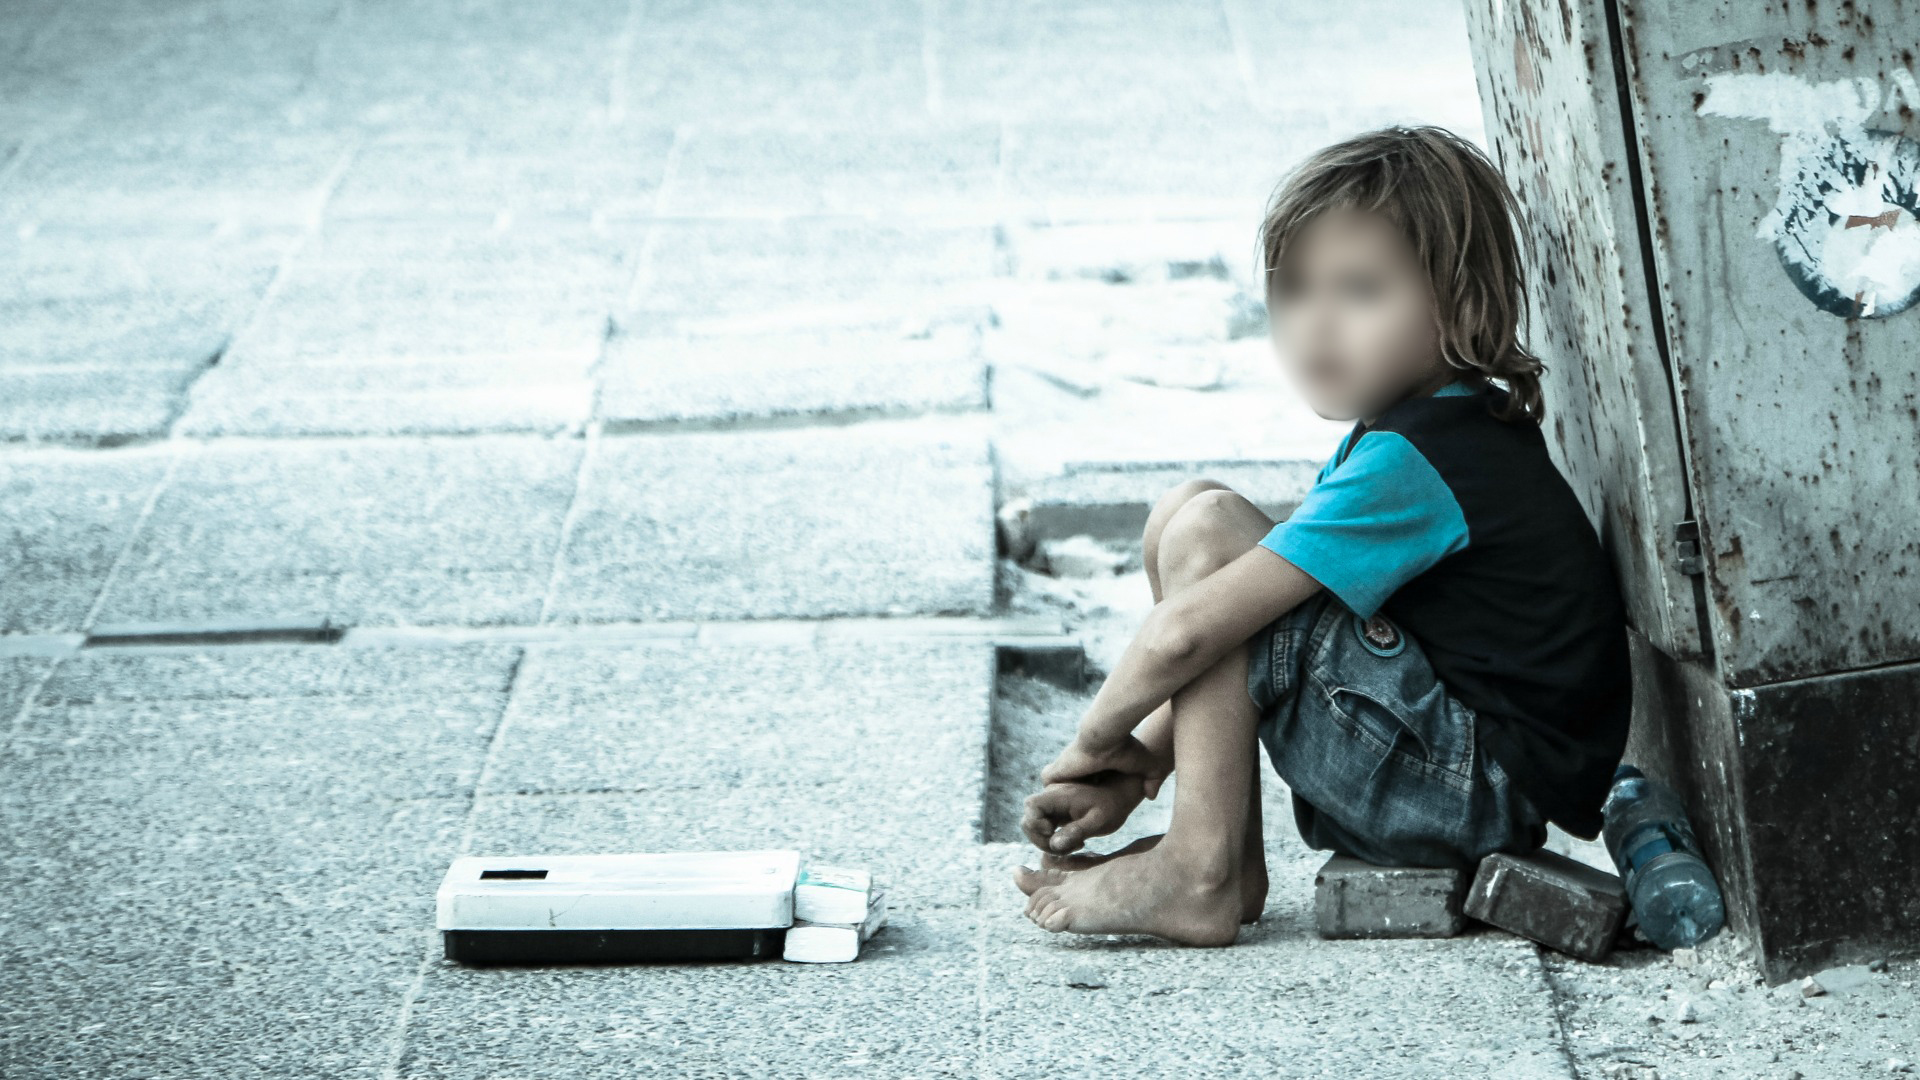 Enfants abandonnés: Le ministère public lance de nouvelles instructions